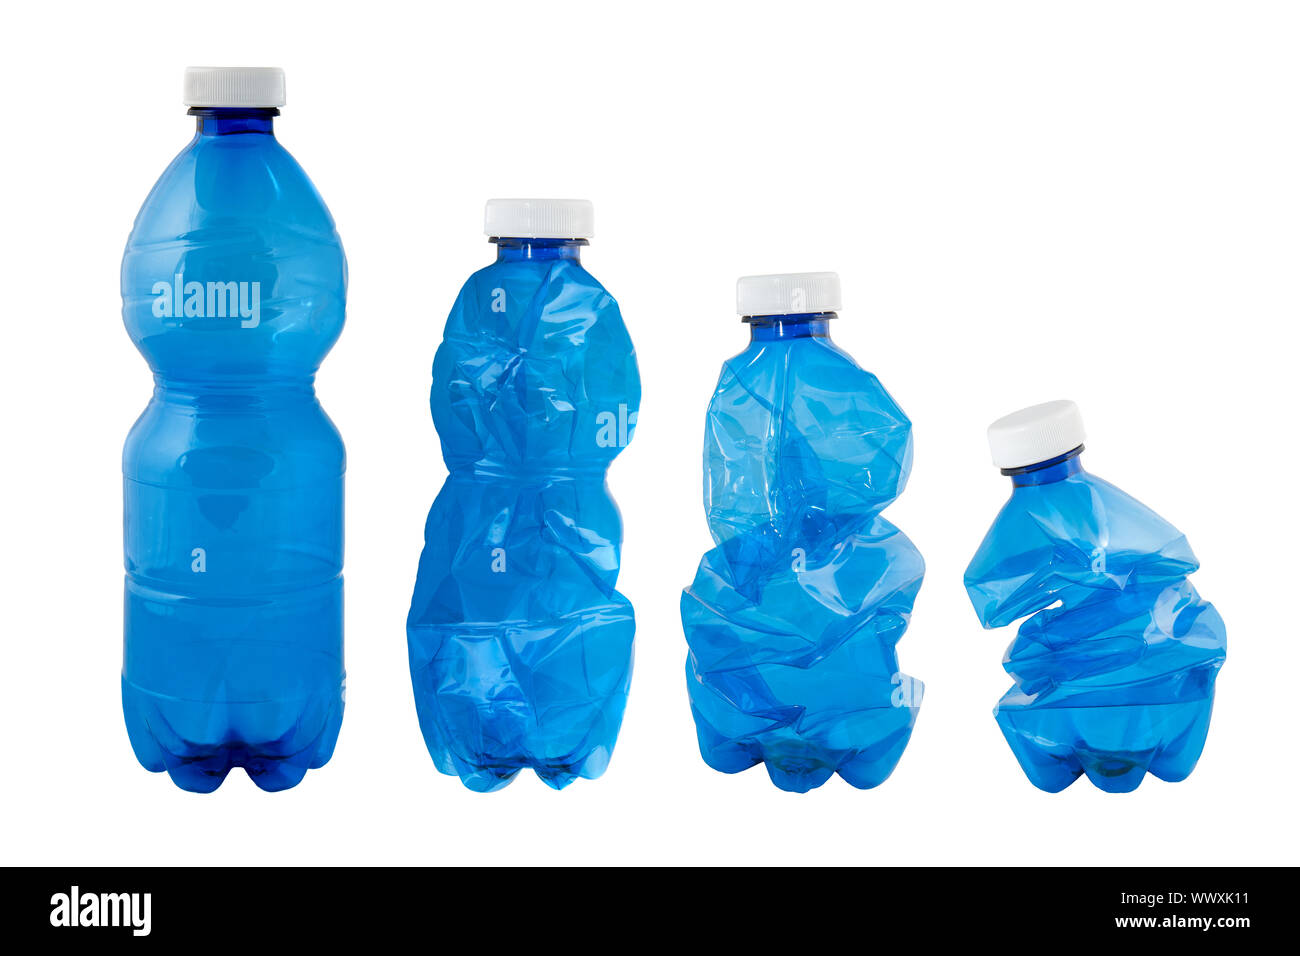 Blue Plastic bottles isolated on white background Stock Photo